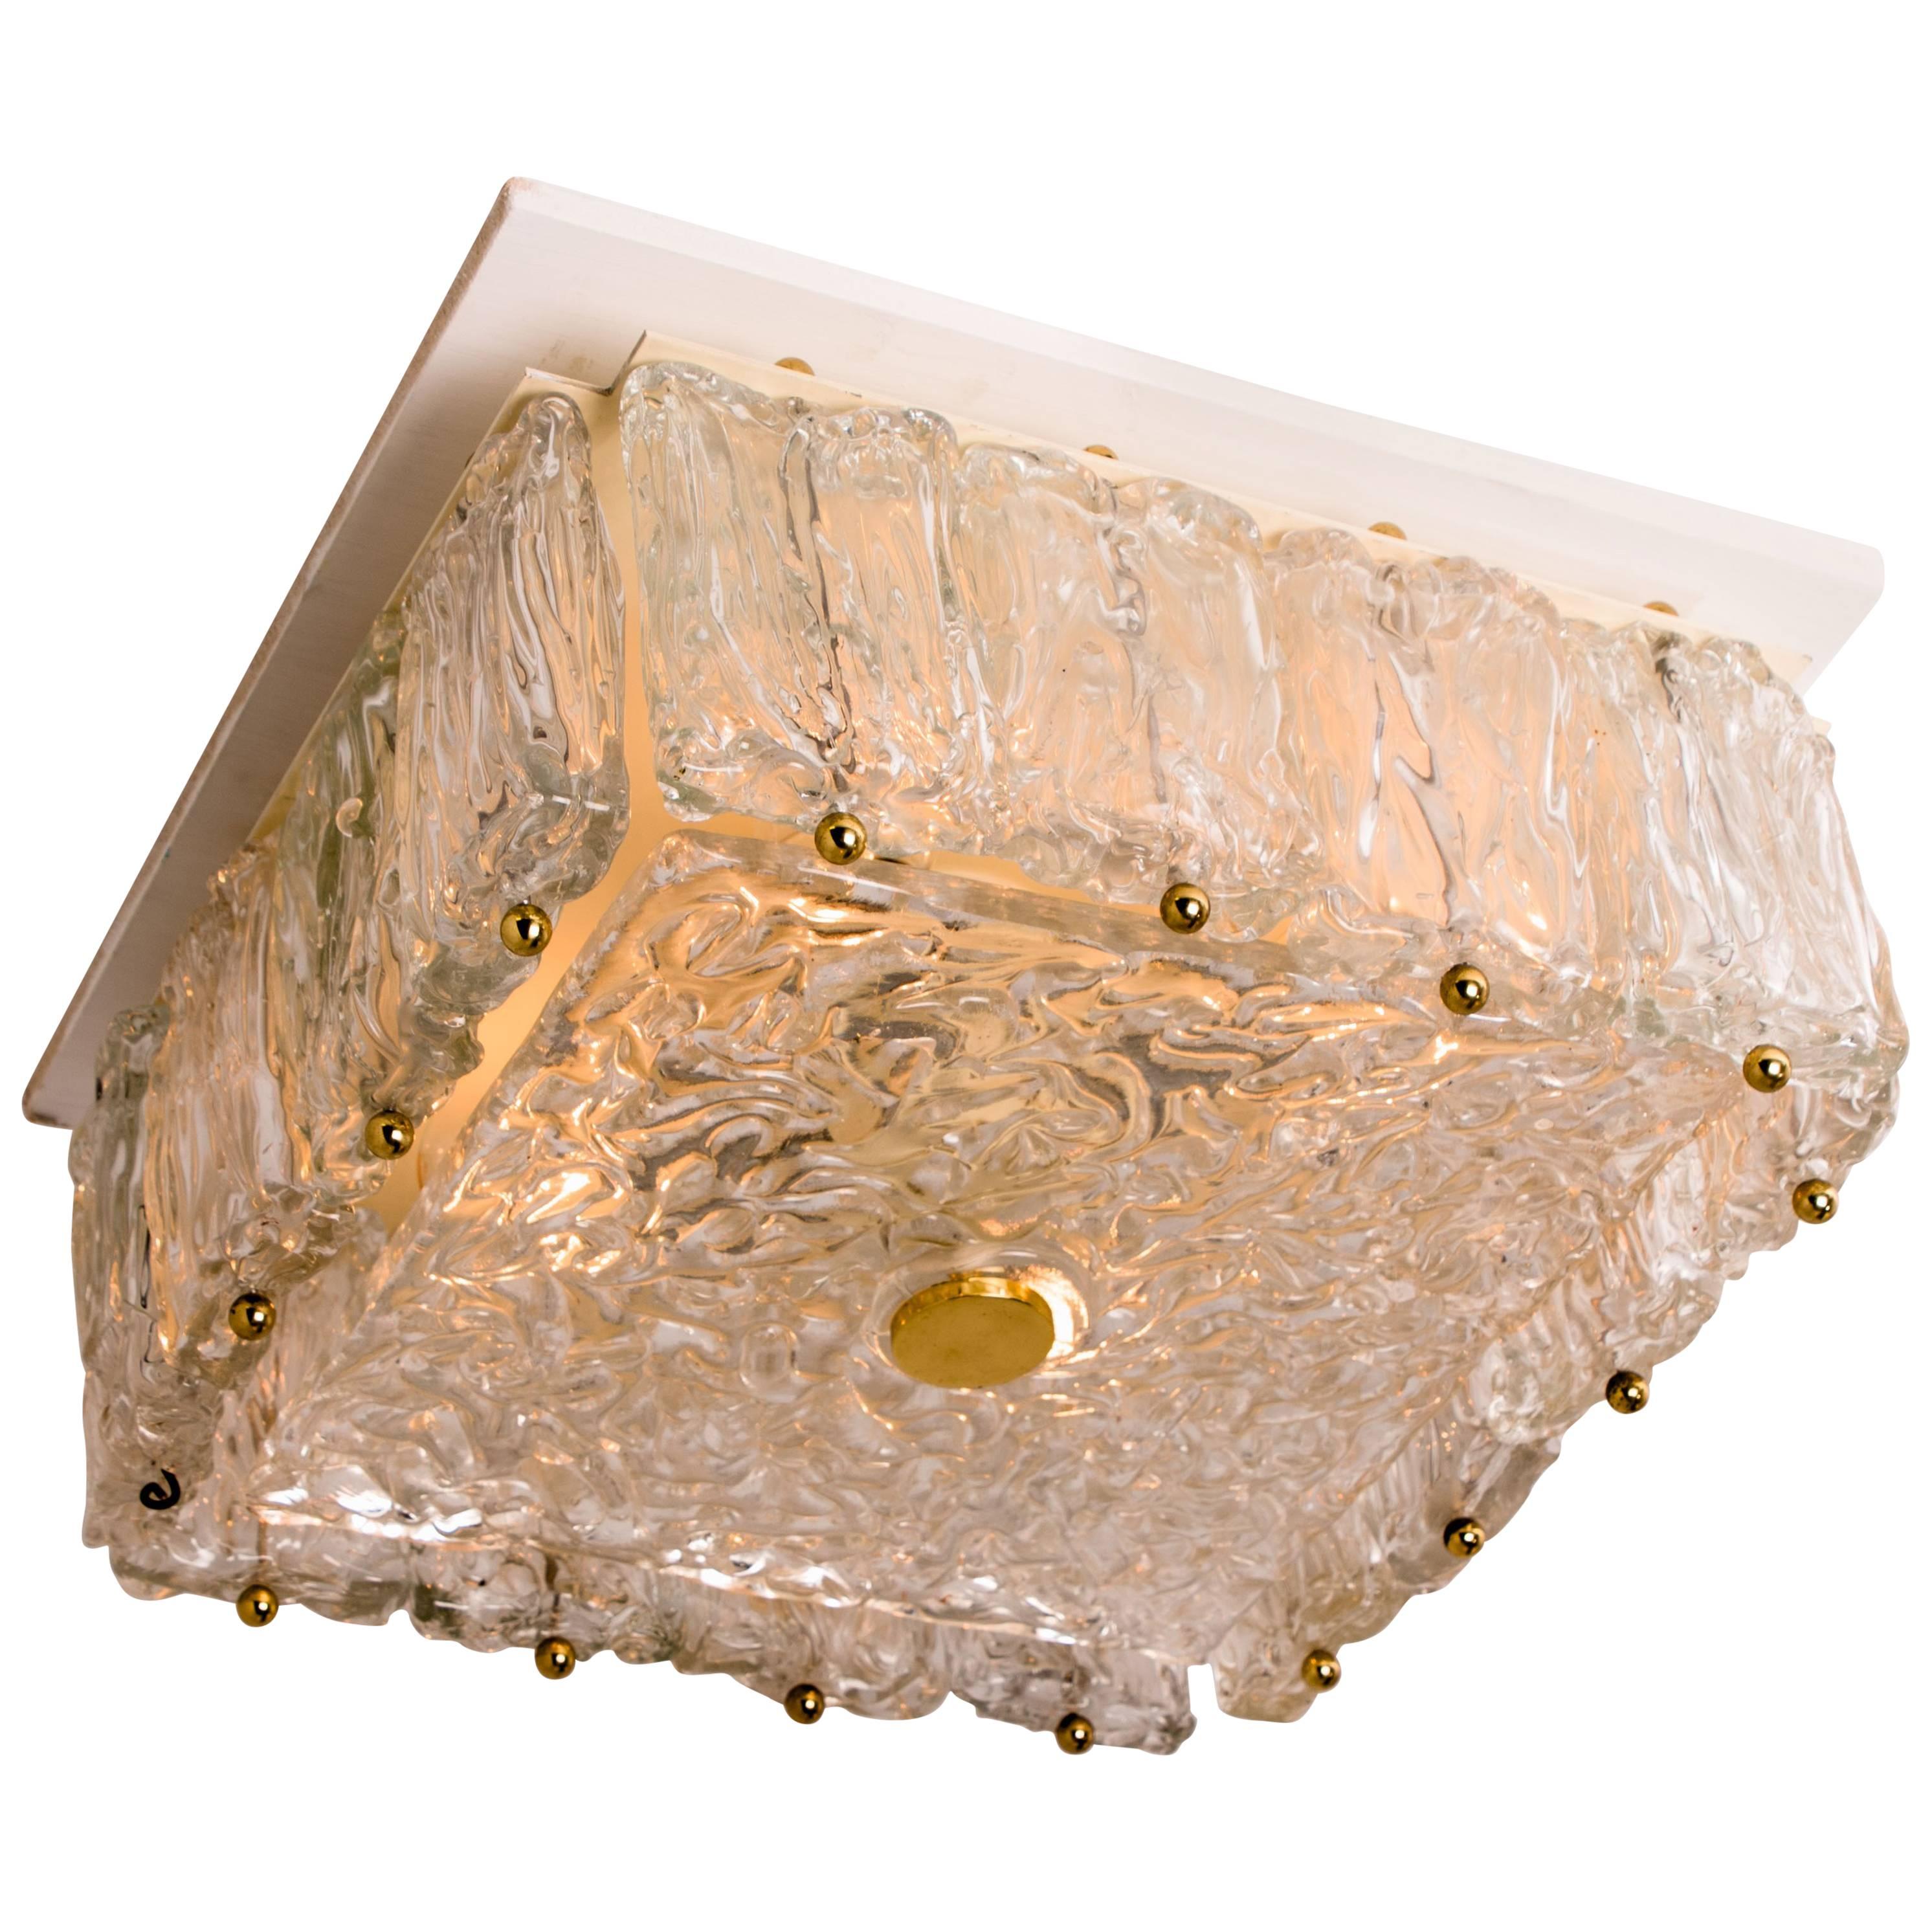 Luminaire en verre de glace texturé de style moderne du milieu du siècle, fabriqué par le fabricant allemand Vereinigte Wekstätten, vers 1965. Ce plafonnier vintage, souvent attribué par erreur à Kalmar, présente un verre épais et des détails en